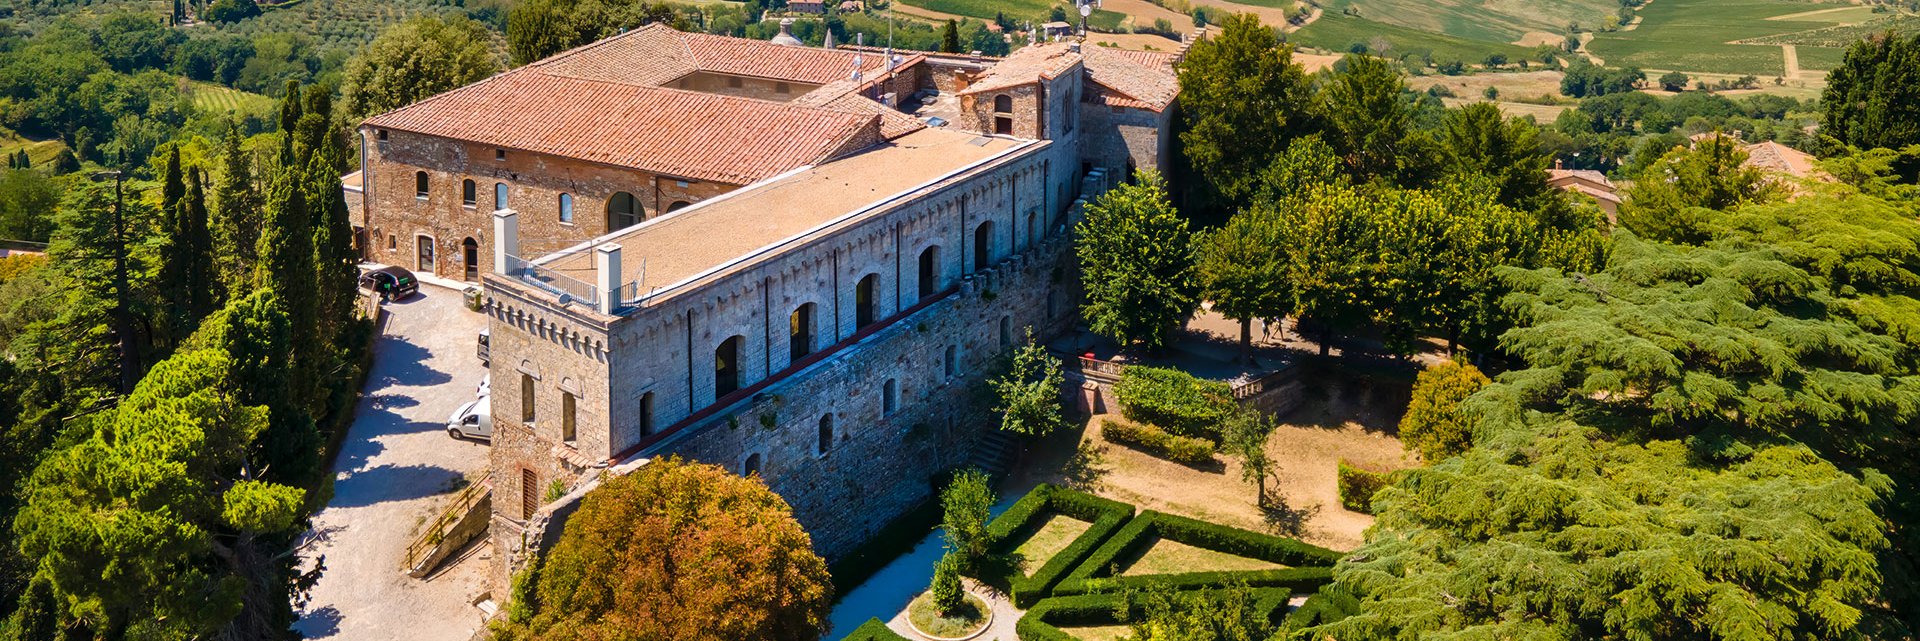 Die mächtige Fortezza diente früher Verteidigungszwecken. Heute ist sie Sitz einer Enoliteca, in der man Vino Nobile, aber auch köstliches Olivenöl probieren kann.